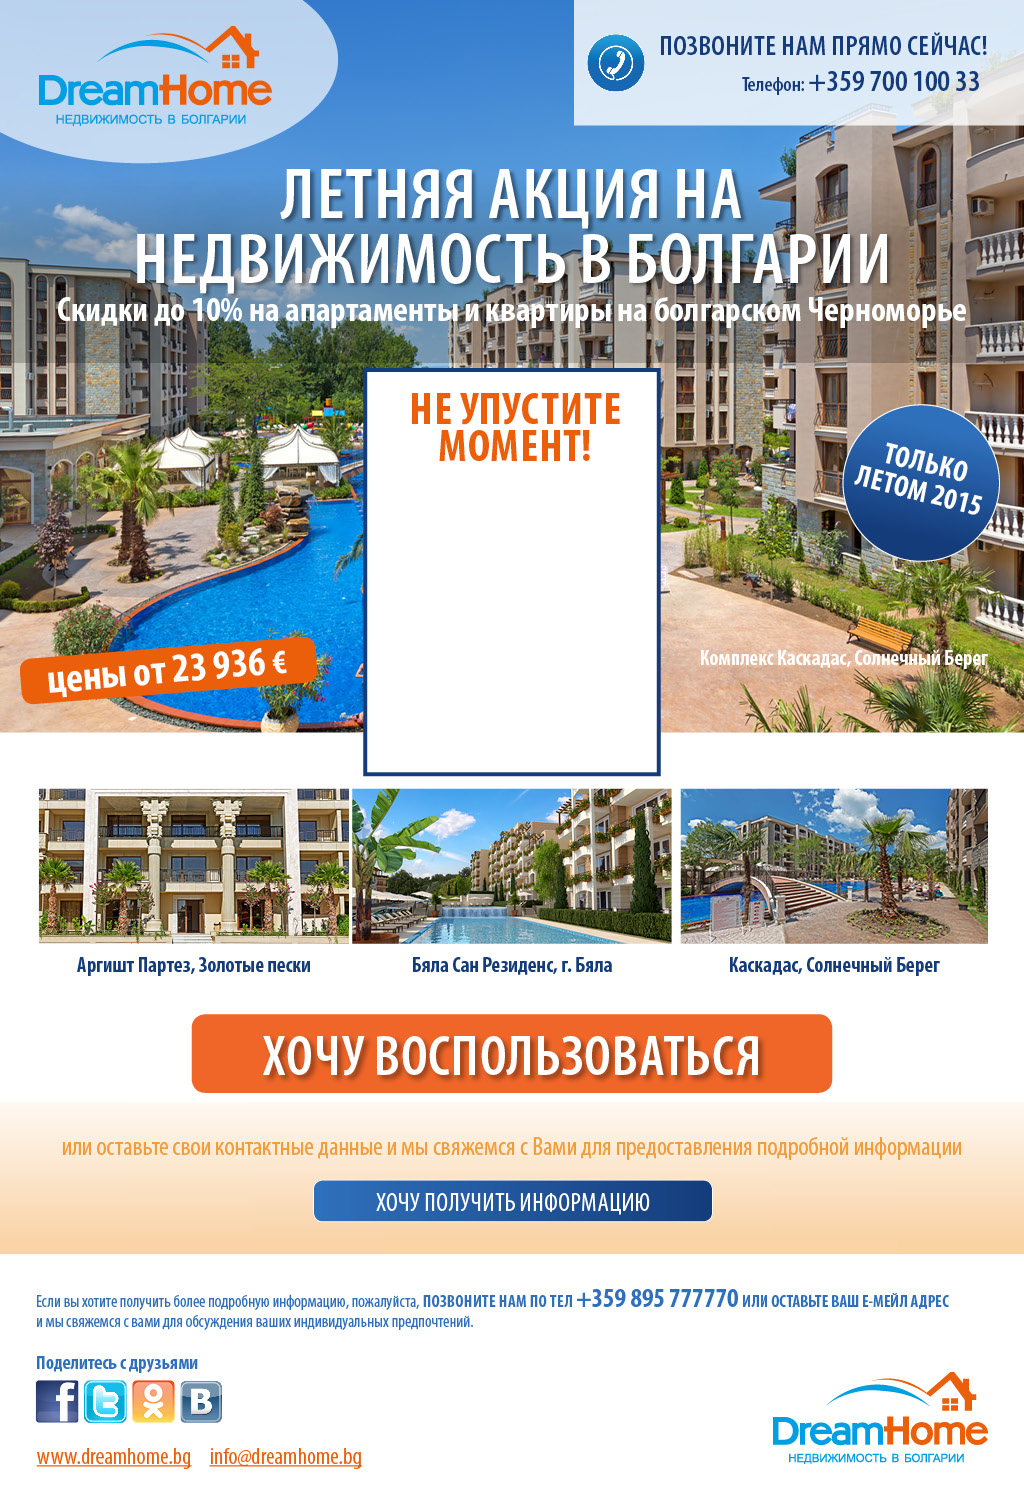 Квартиры и недвижимость в Болгарии со скидками